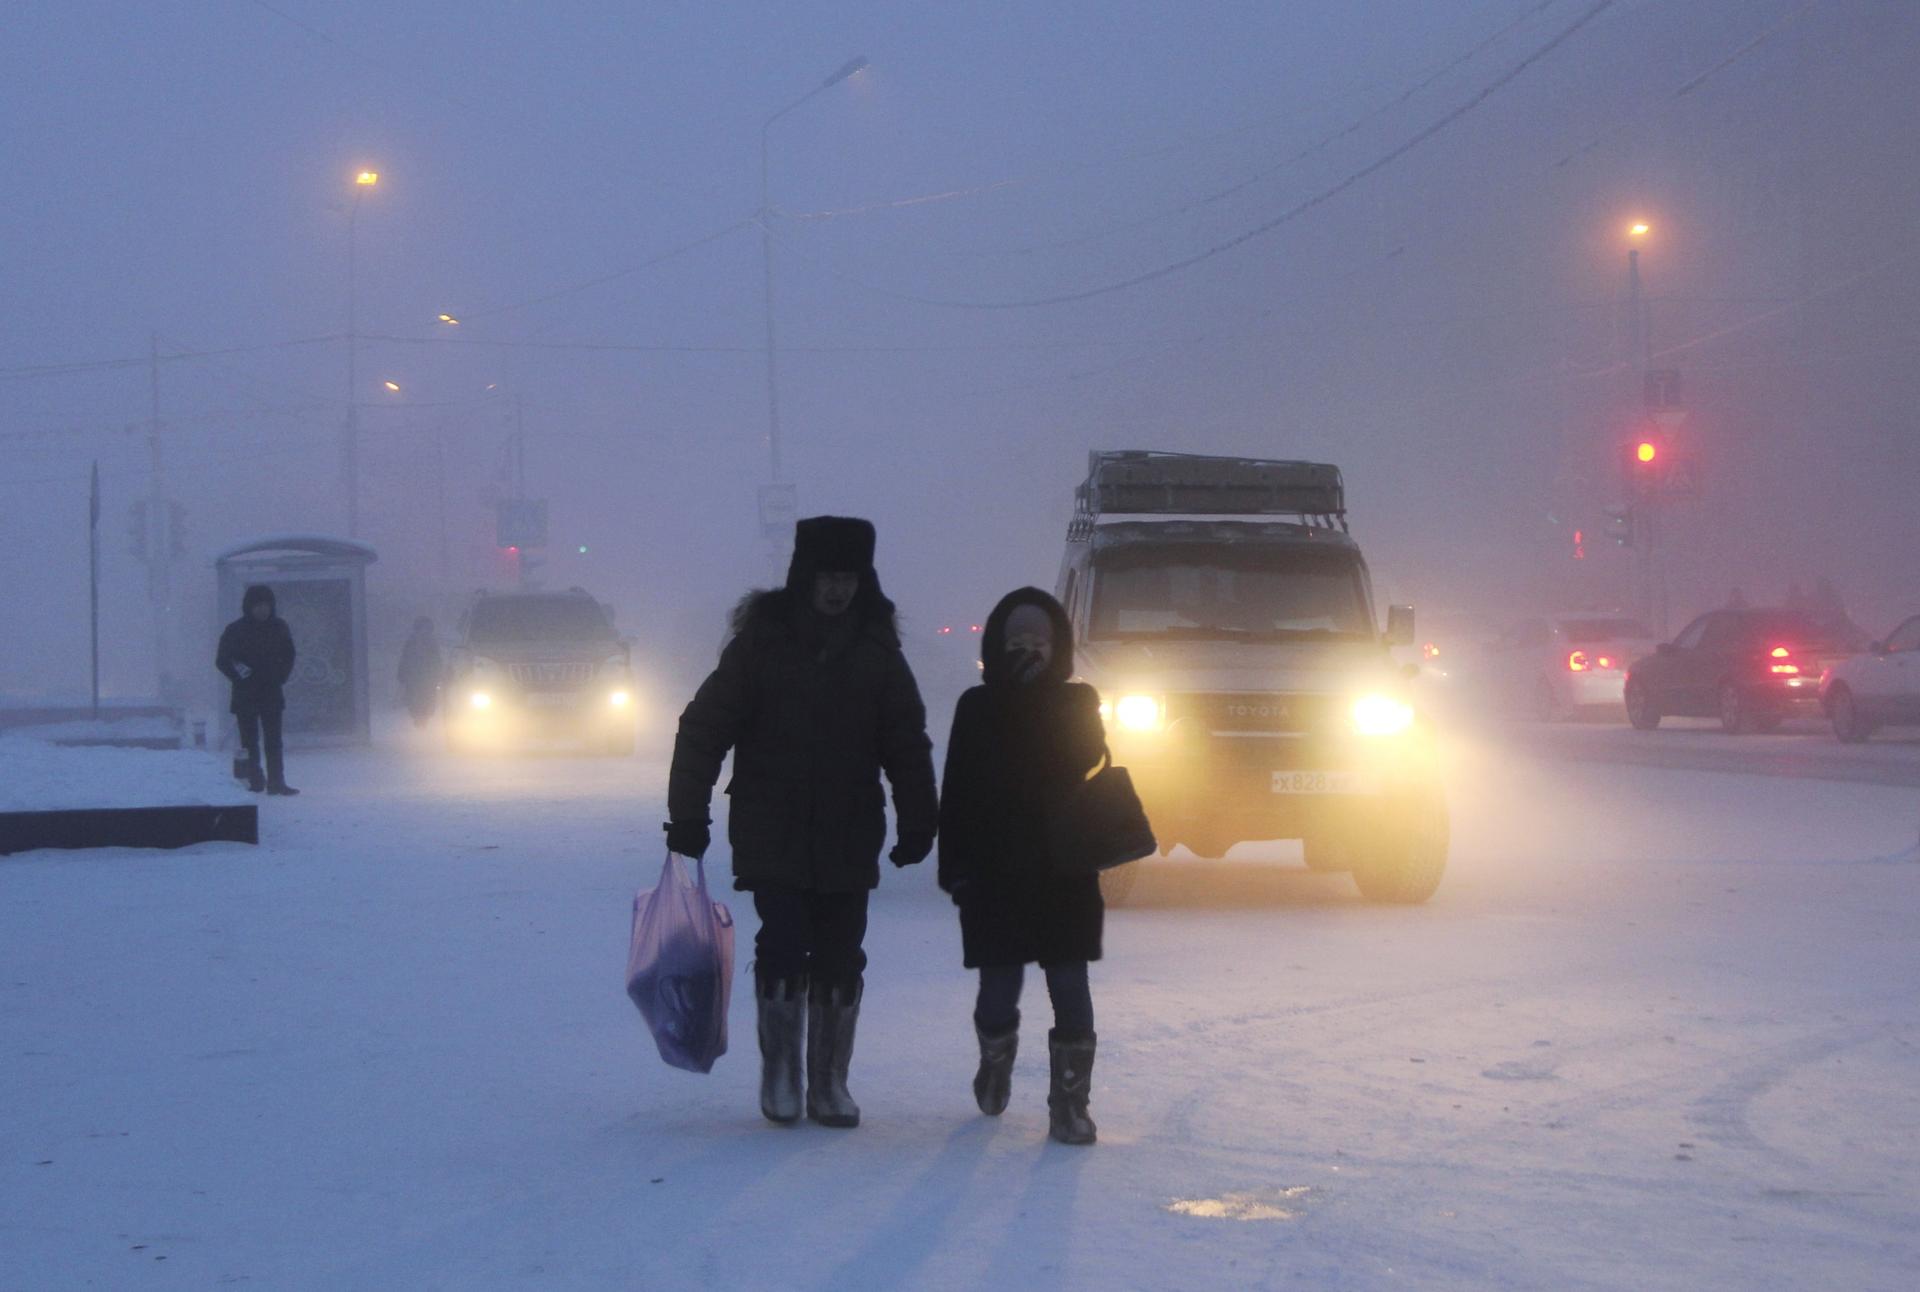 Two people walk in a snowy street scene.